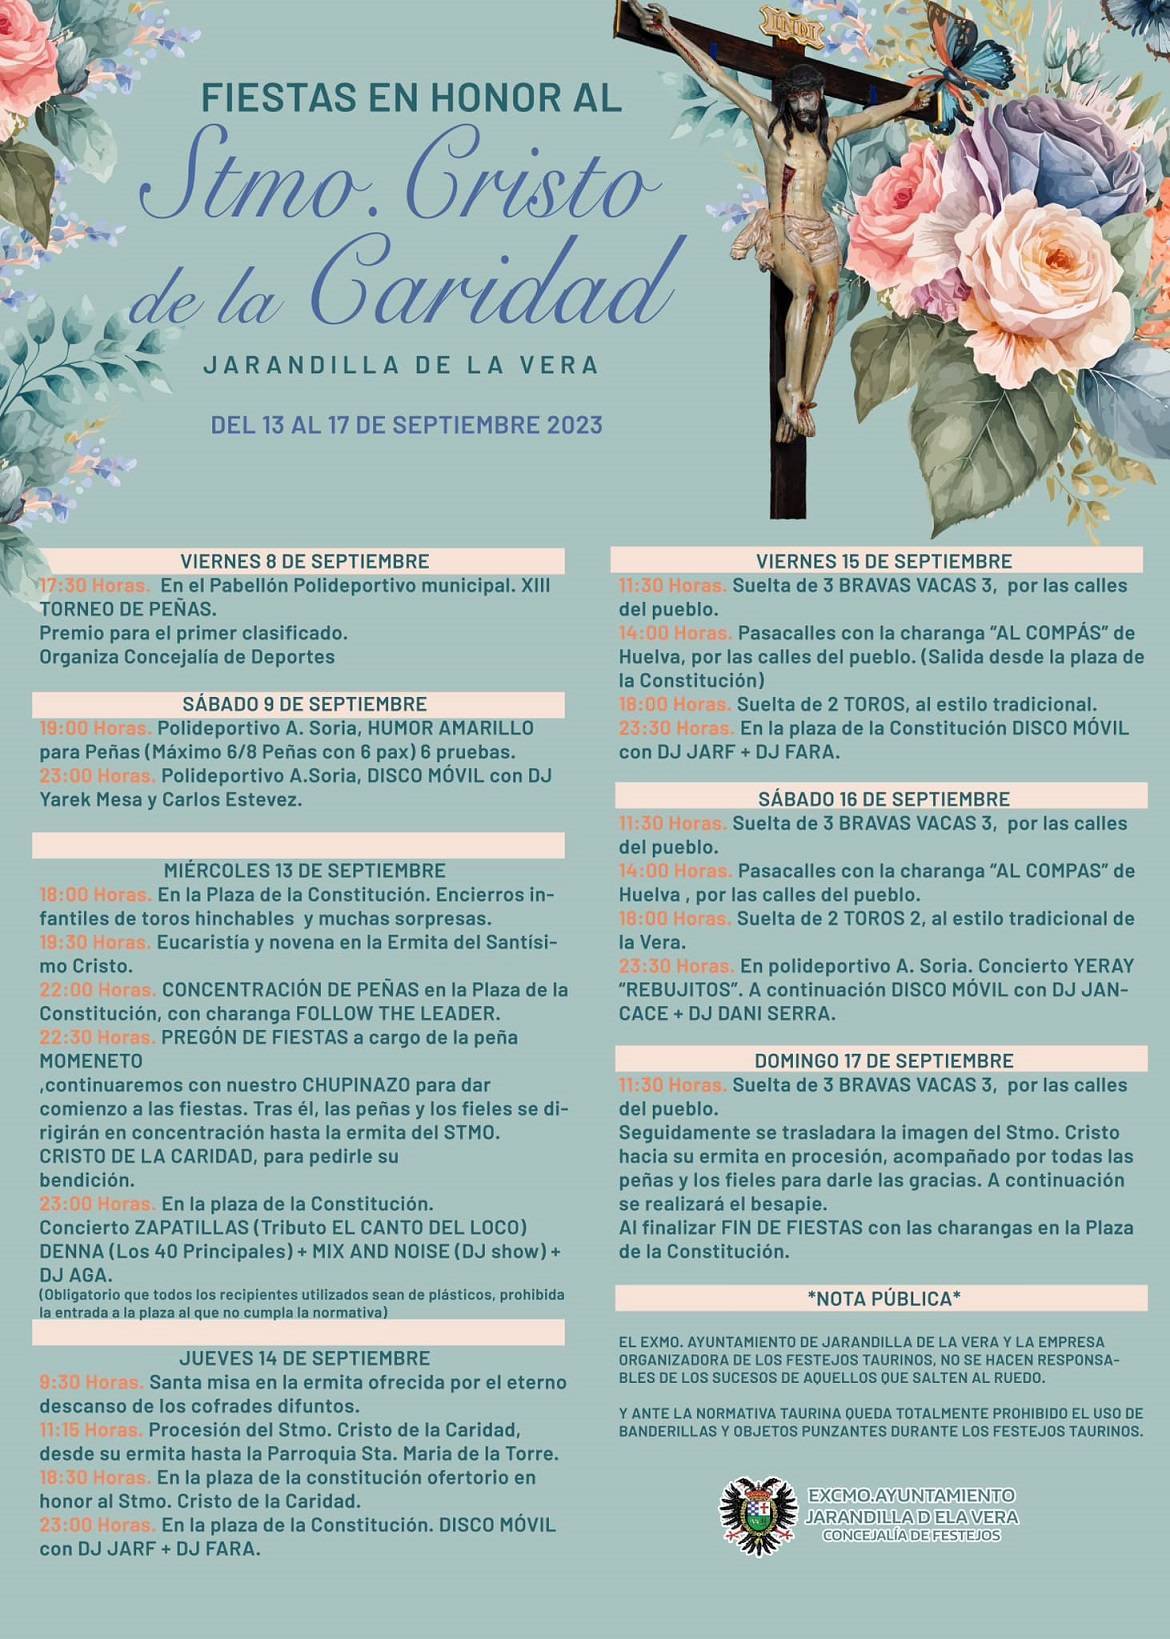 Fiestas en honor al Santísimo Cristo de la Caridad (2023) - Jarandilla de la Vera (Cáceres)